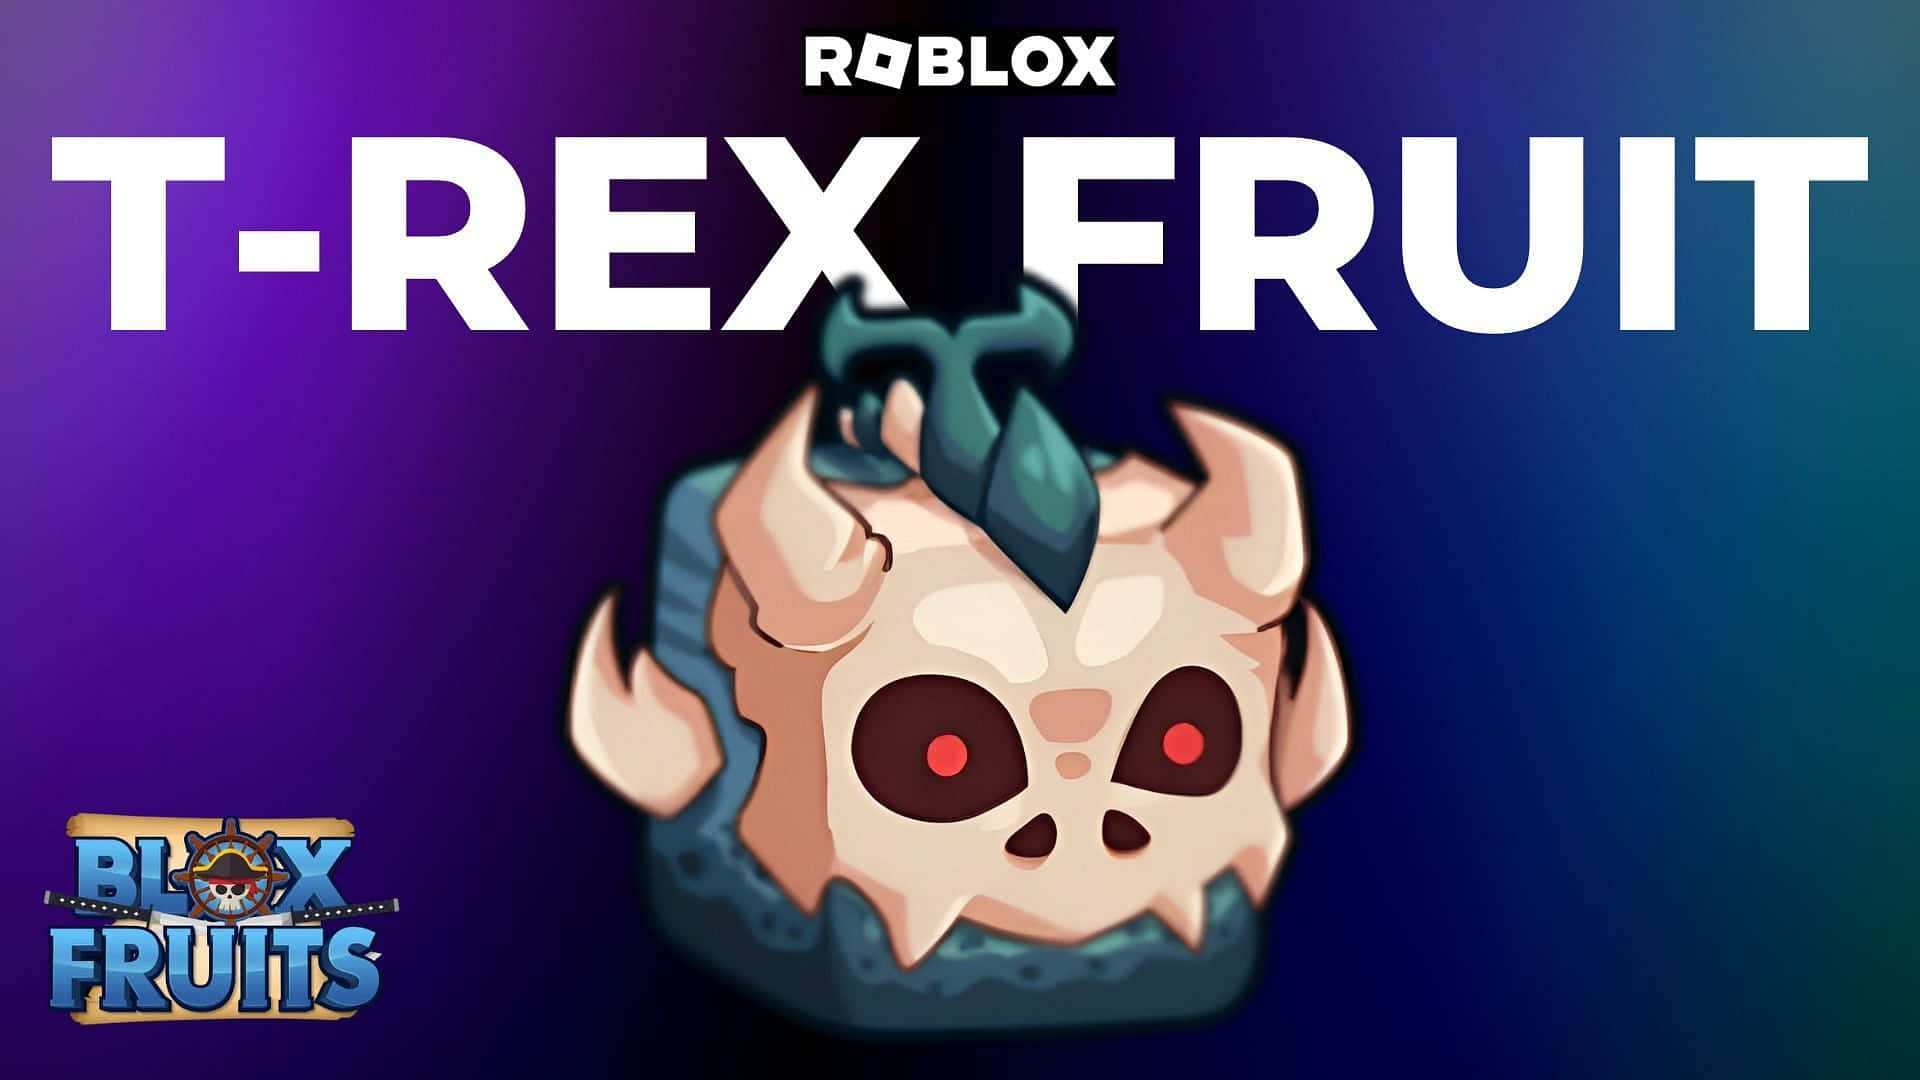 Blox Fruits T Rex Fruit Promotional Art Wallpaper